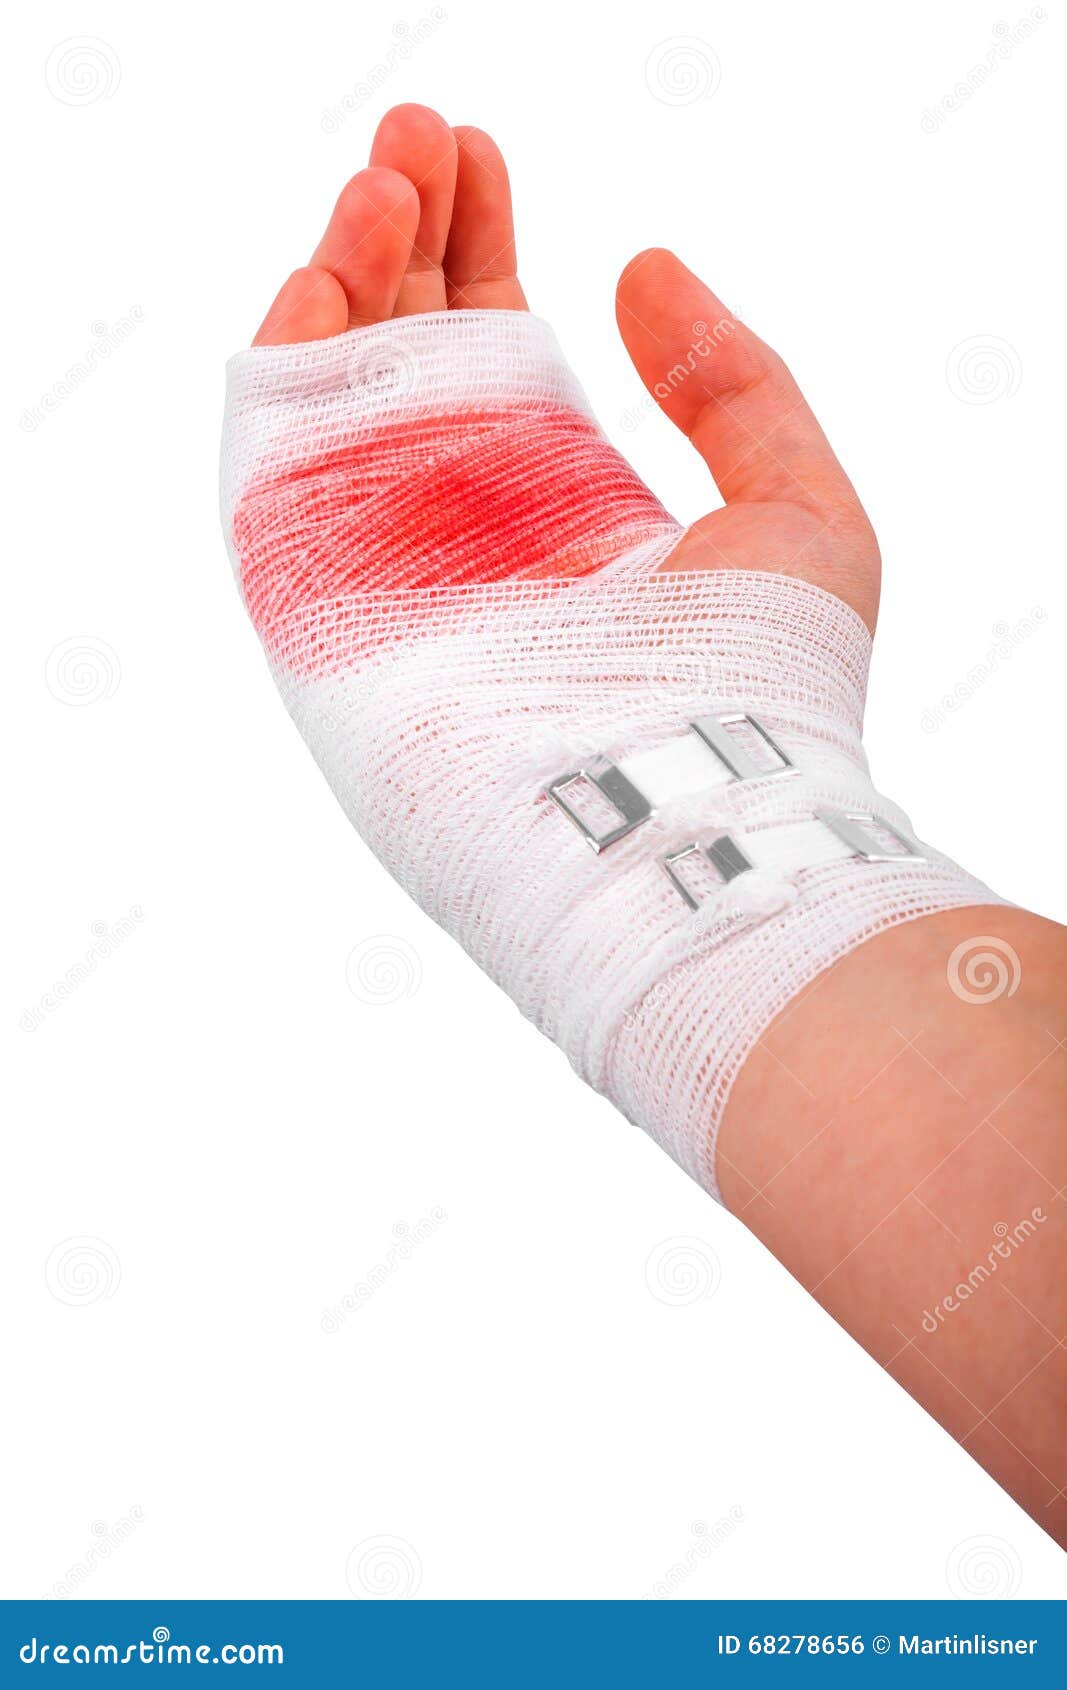 手腕受伤包扎真实图片,女生手腕割伤包扎图片 - 伤感说说吧